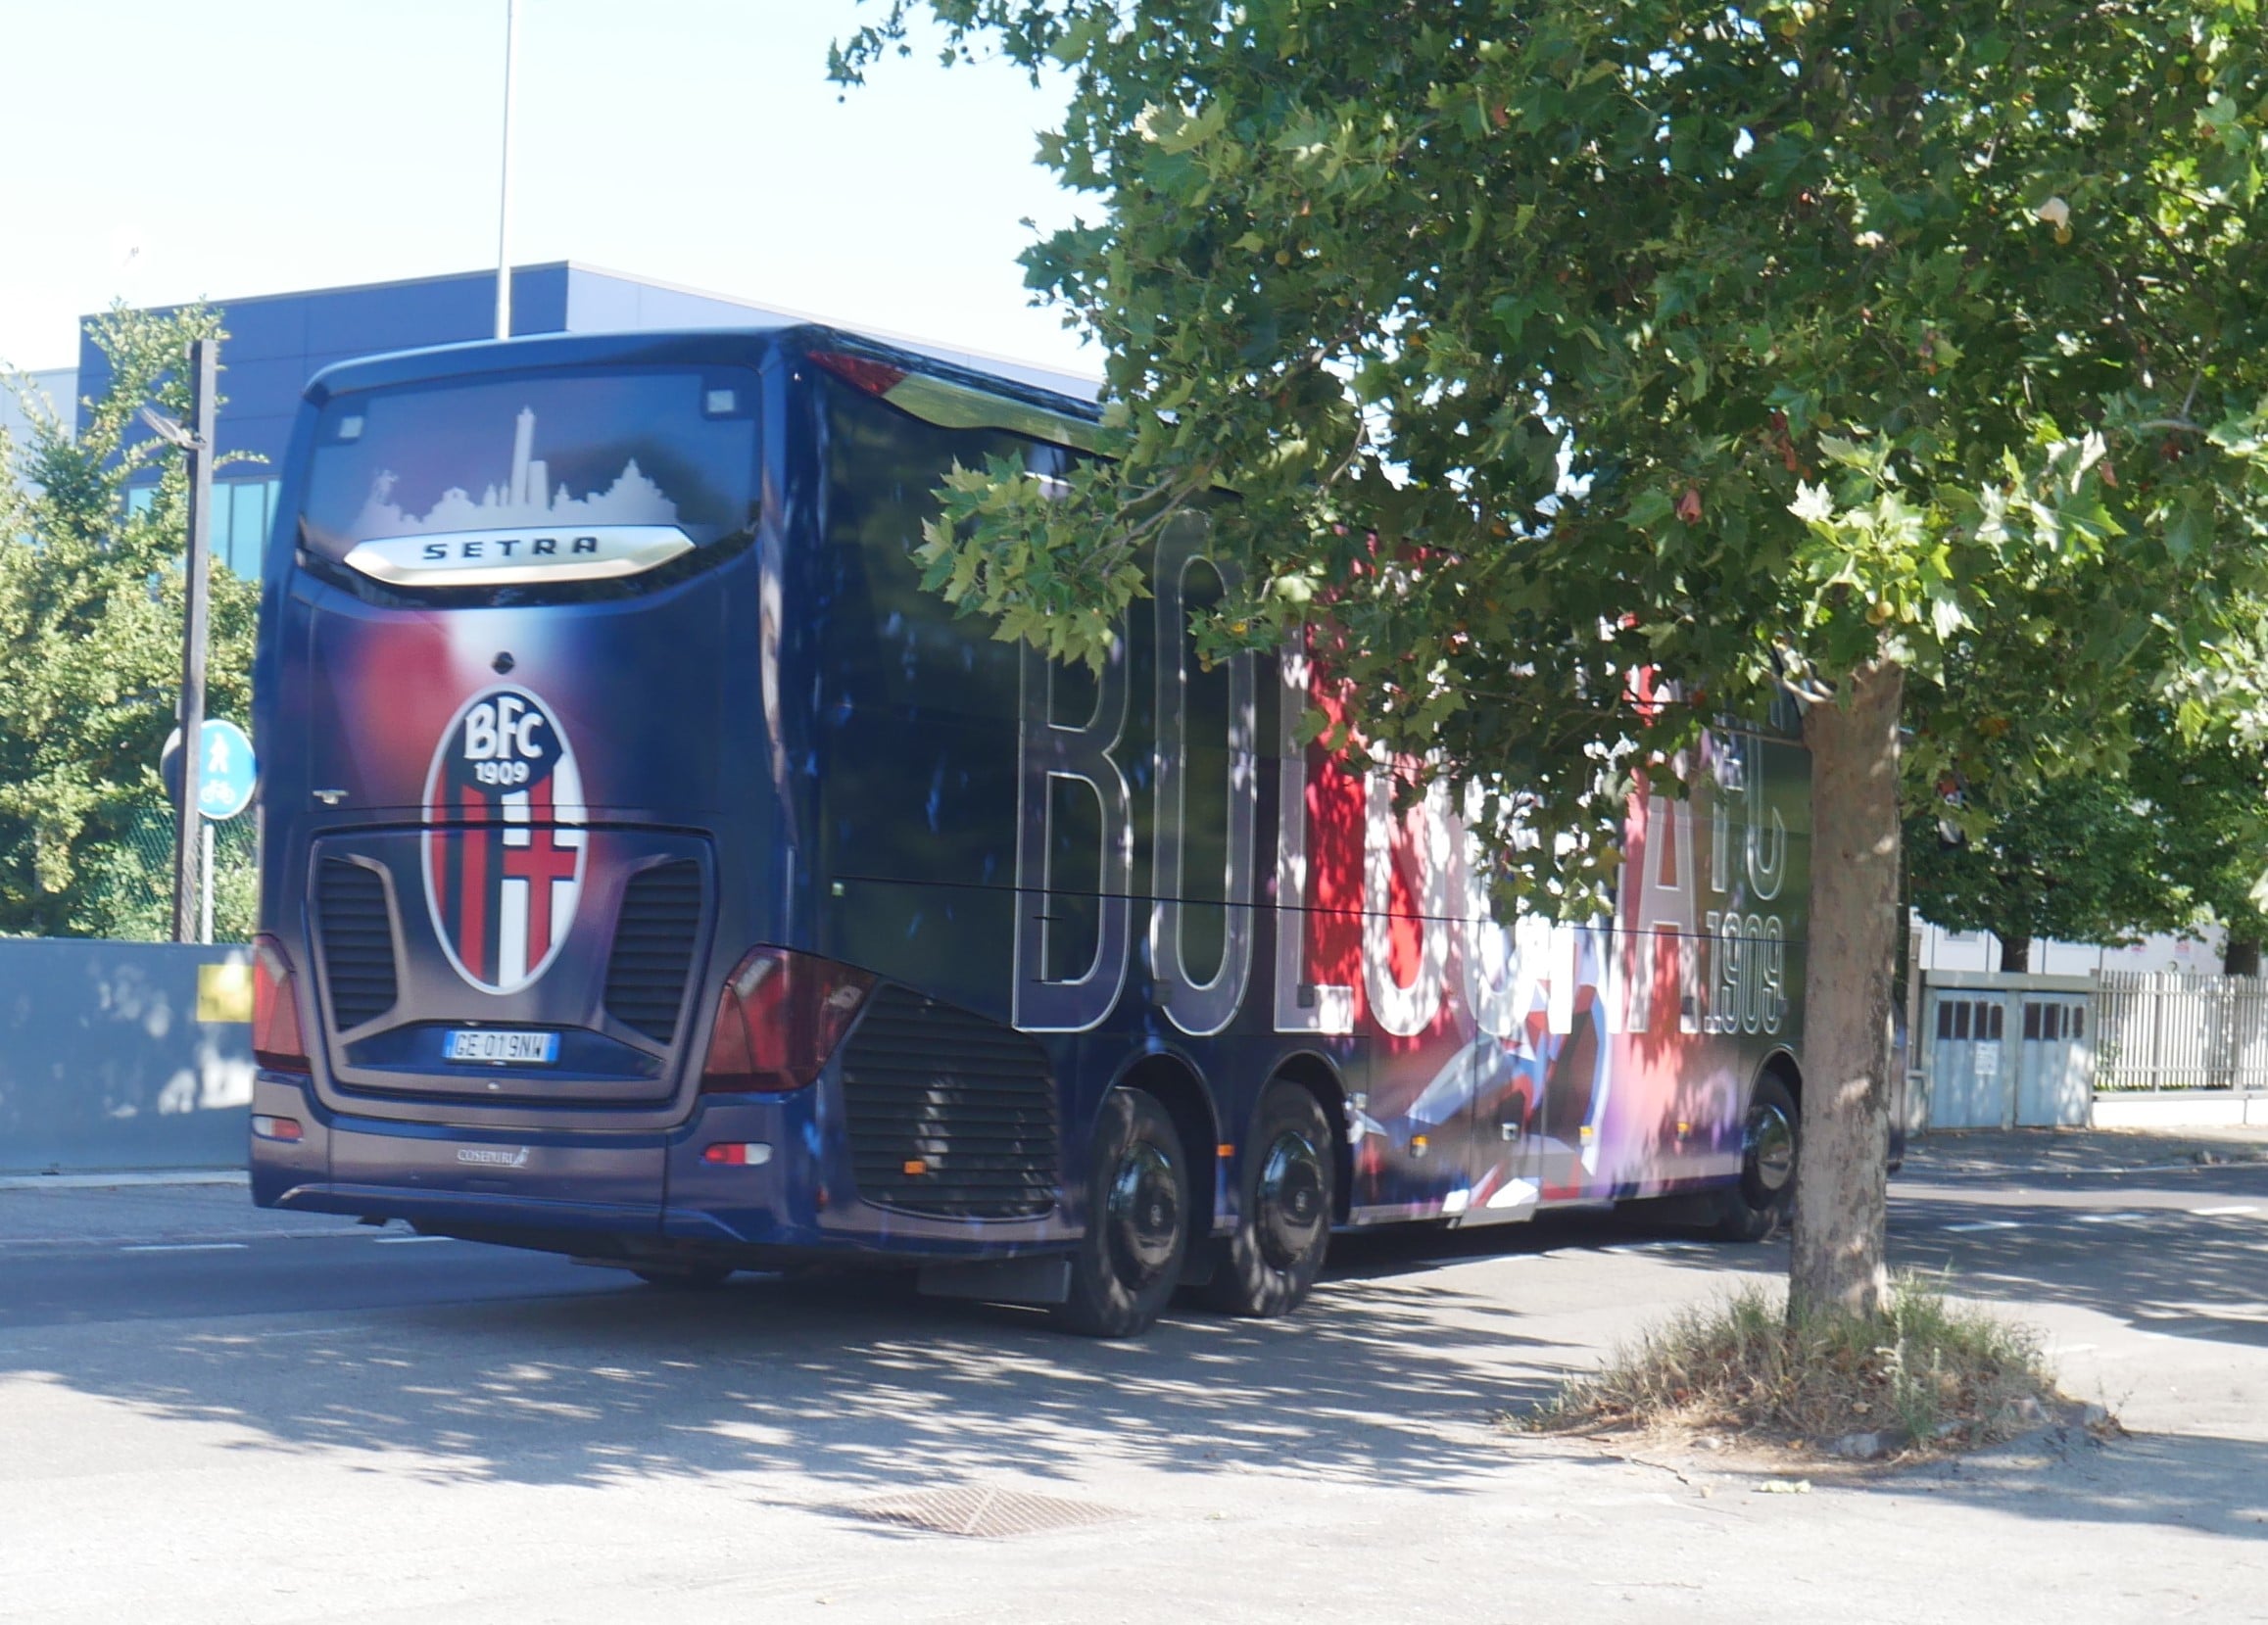 Posteriore del bus del Bologna FC con skyline della città